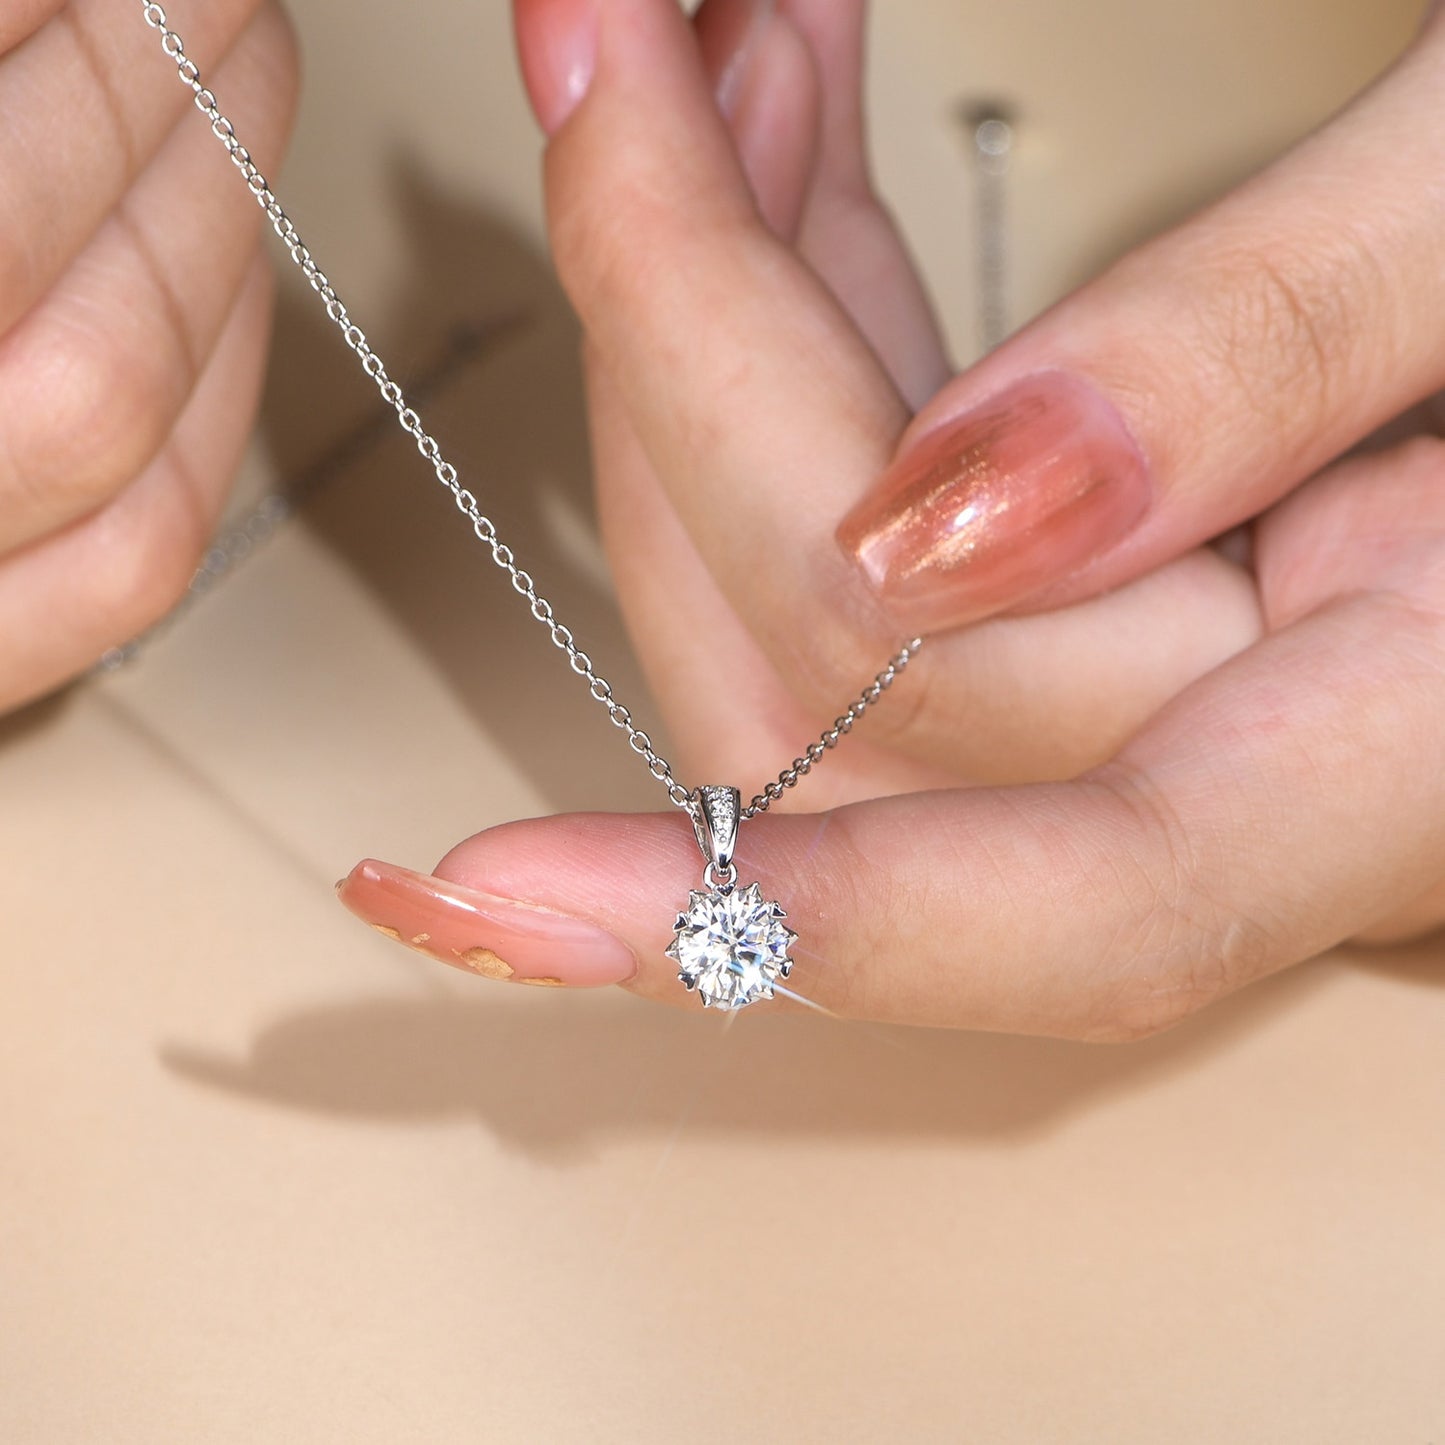 1 Carat Round Brilliant Cut D Color Moissanite Pendant Necklace Silver 925 Moissanite Diamond Test Past White Gemstone Necklace